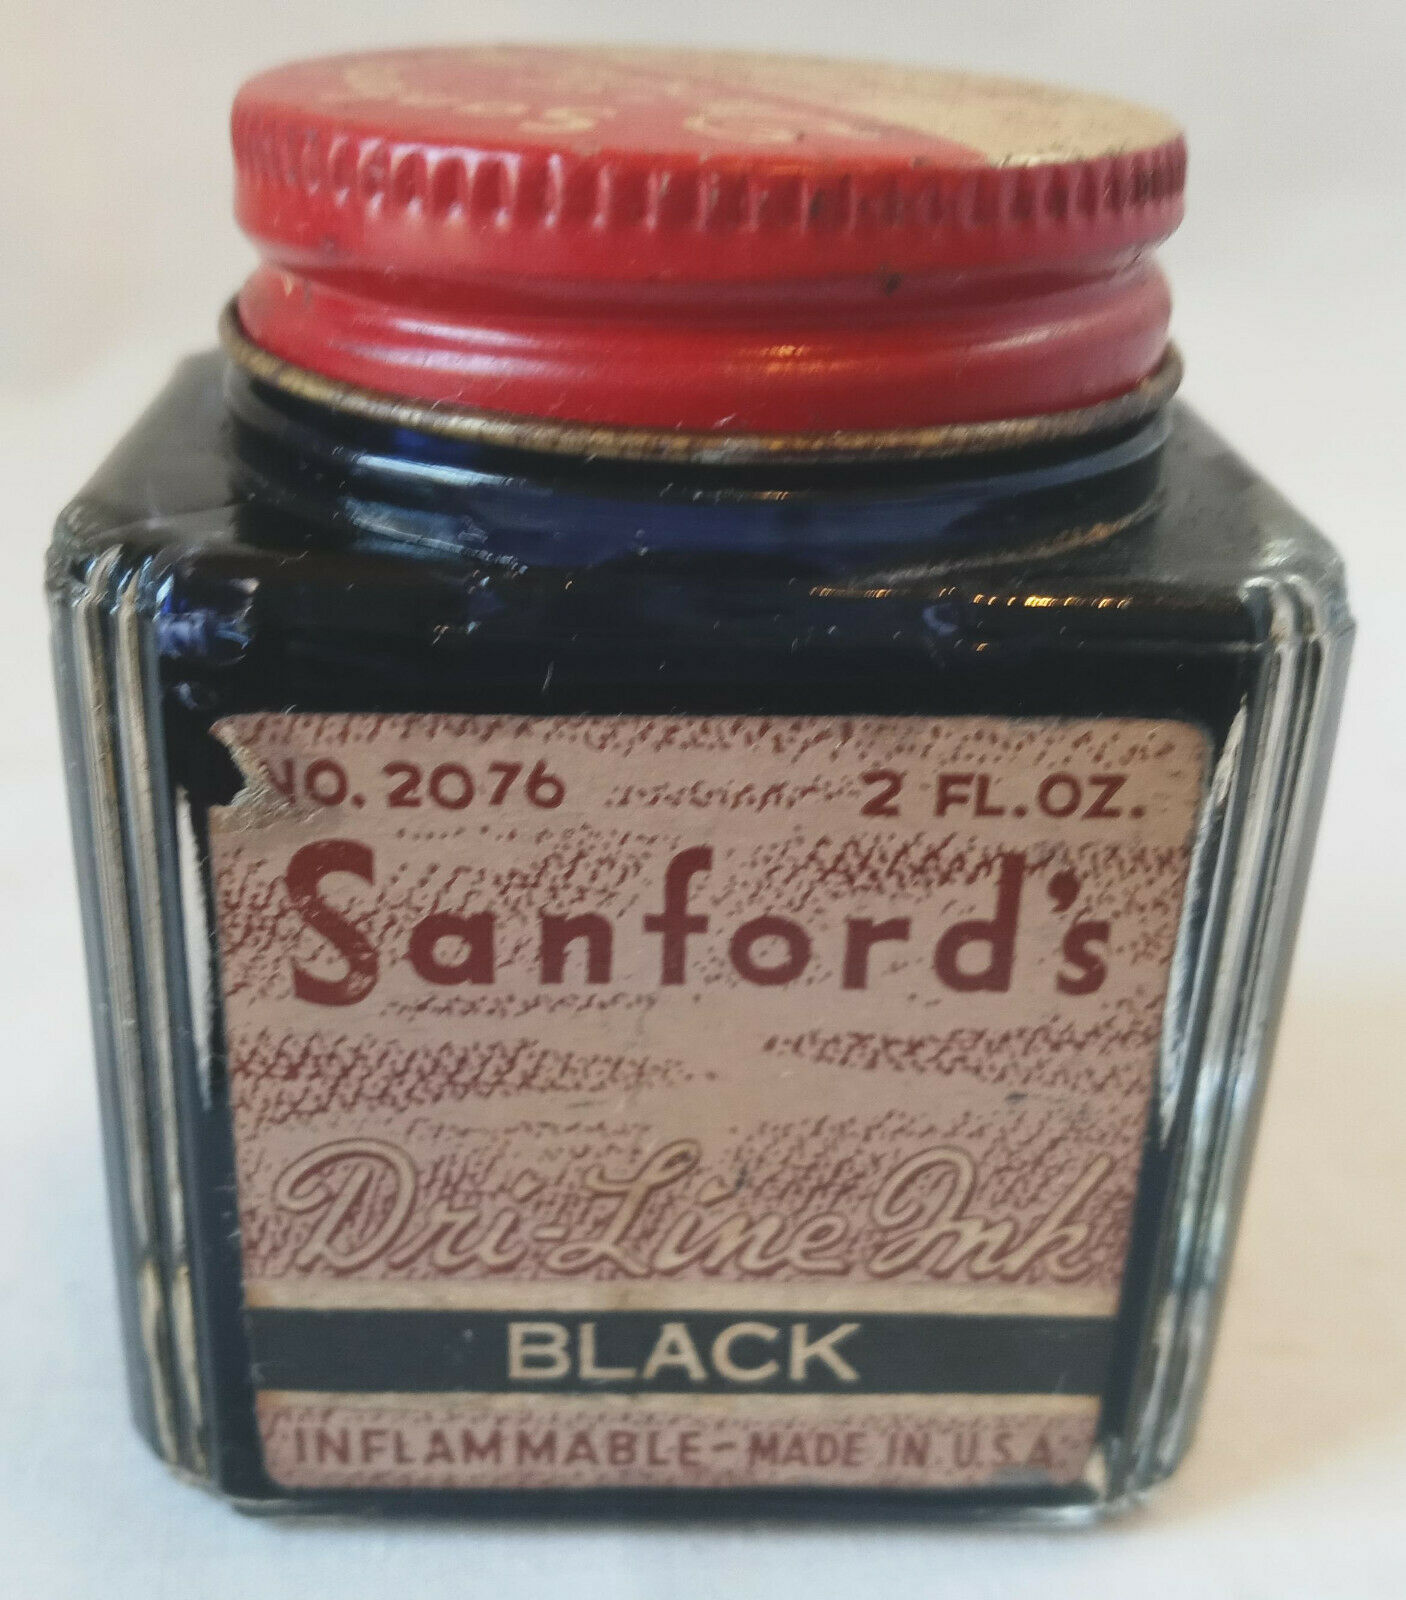 Vintage Sanfords Black Ink Bottle No 2076 2 fl oz